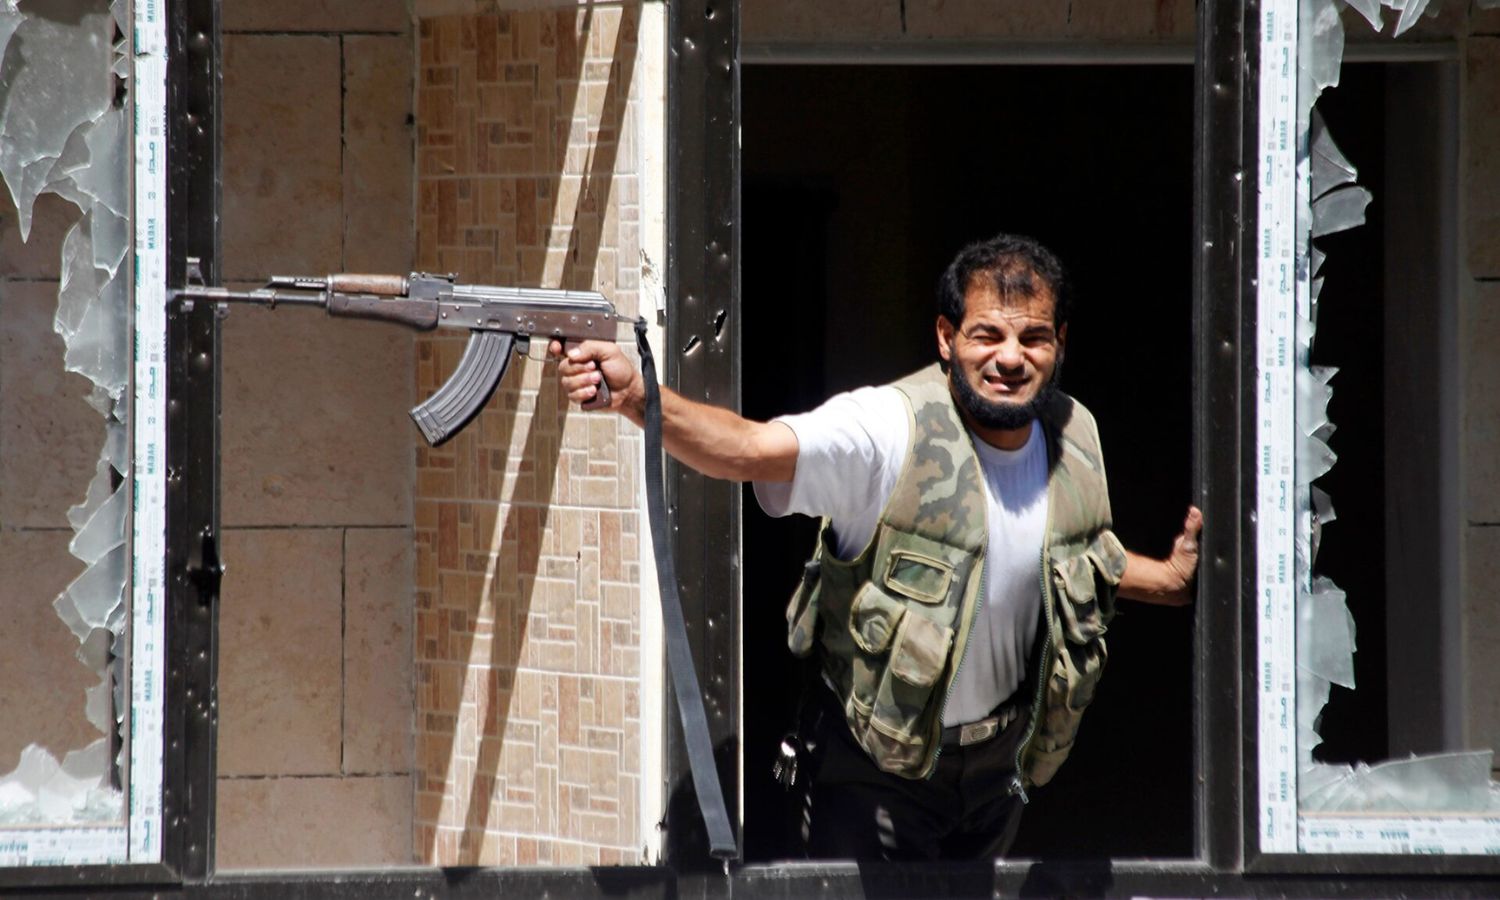 مقاتل من "الجيش السوري الحر" يطلق النار من سلاحه على قصر العدل الذي تسيطر عليه قوات النظام في حلب - 13 من أيلول 2013 (رويترز) مقاتل من "الجيش السوري الحر" يطلق النار من سلاحه على قصر العدل الذي تسيطر عليه قوات النظام في حلب - 13 من أيلول 2013 (رويترز)